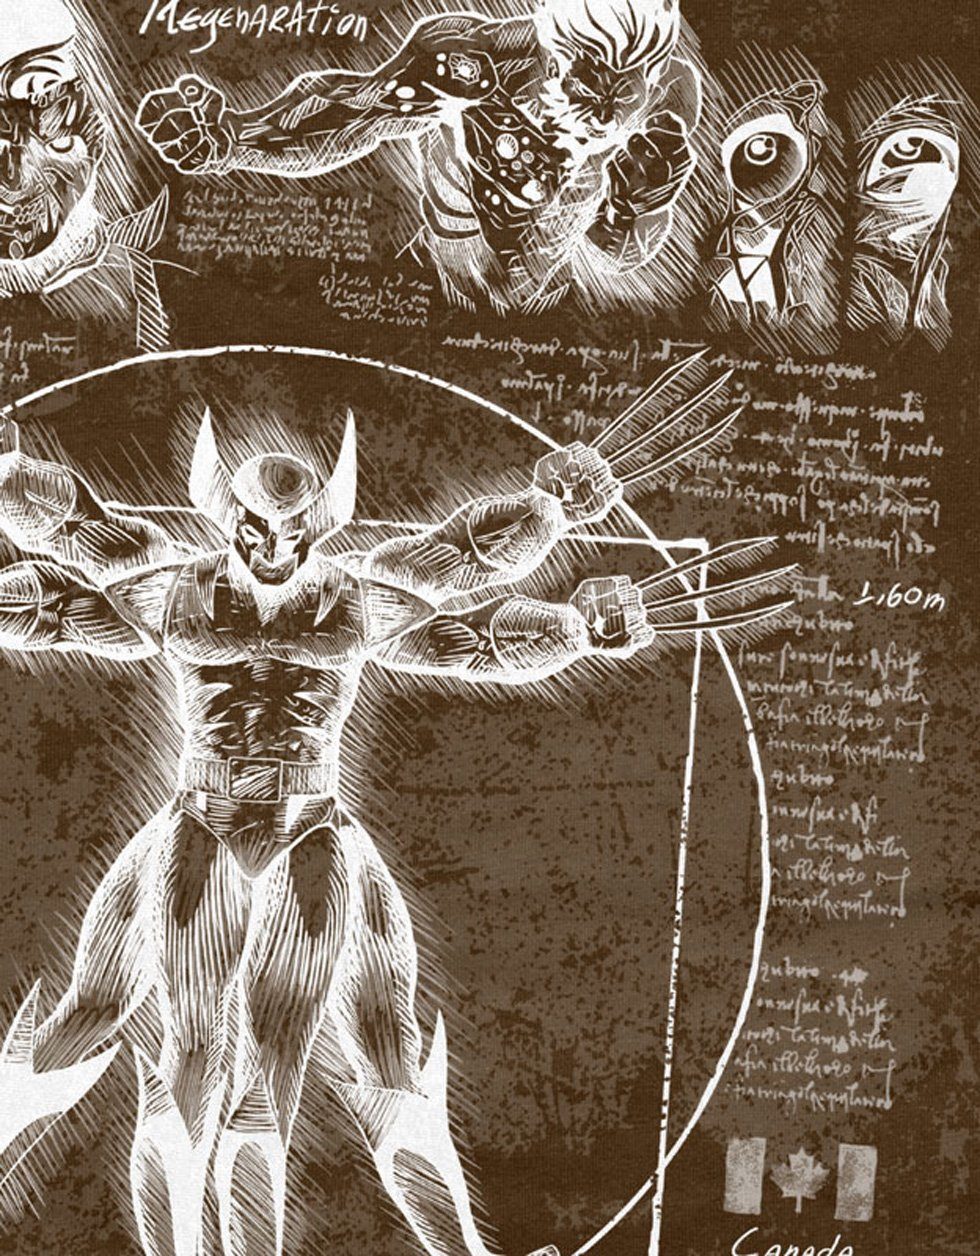 T-Shirt Wolverine Print-Shirt Vitruvianischer style3 comic kino logan mutant klingen Herren braun